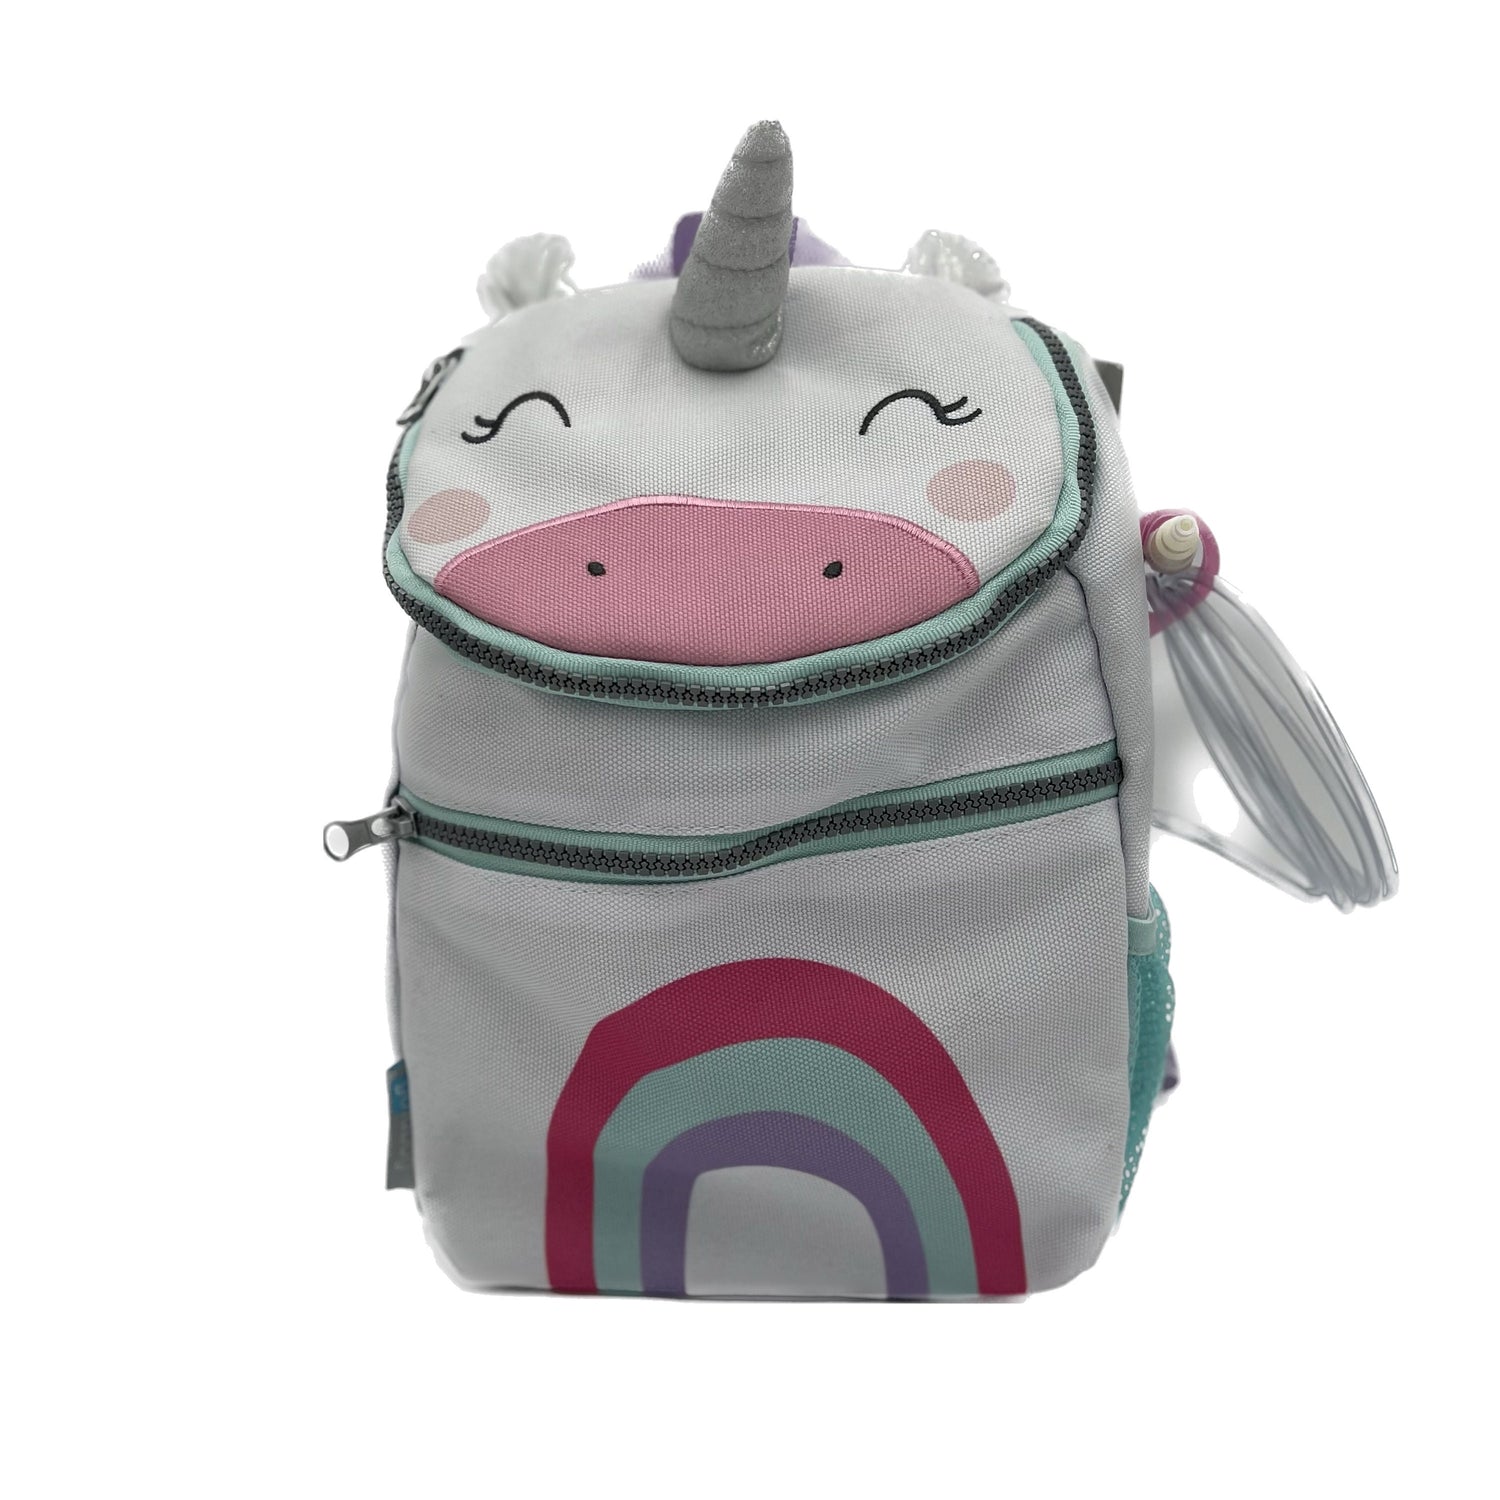 Toddler Sized Tube Feeding Backpack | 500ML | for EnteraLite Infinity Pump |XS Goldbug Rainbow Unicorn